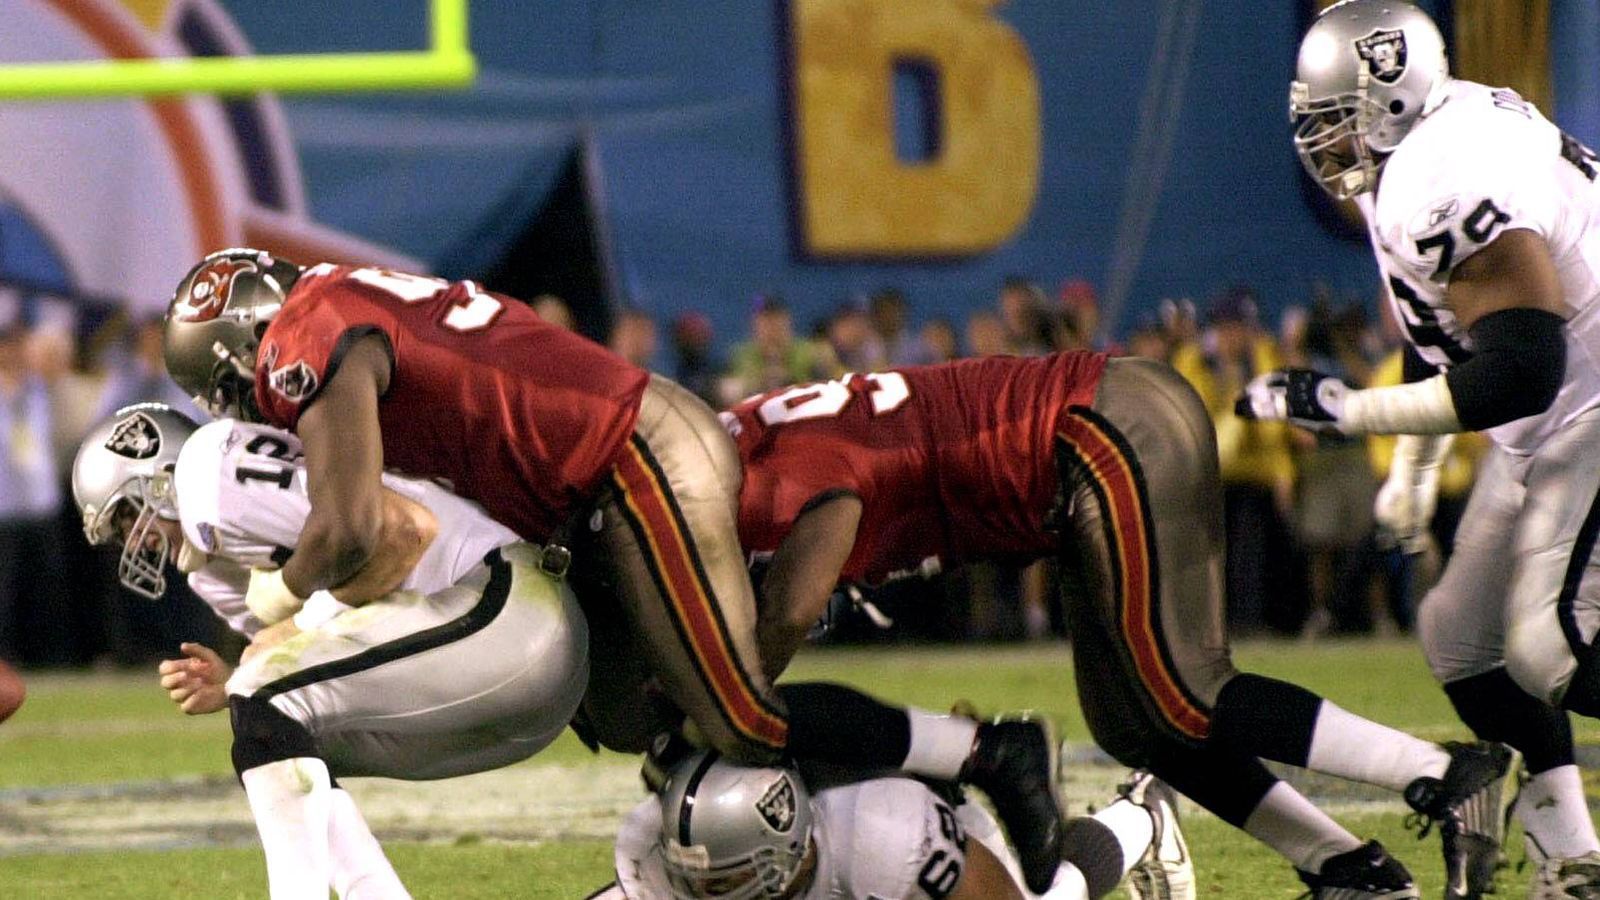 
                <strong>Super Bowl 2003: Tampa Bay Buccaneers (48:21 gegen die Oakland Raiders)</strong><br>
                Saison danach: 7-9, Playoffs verpasst
              